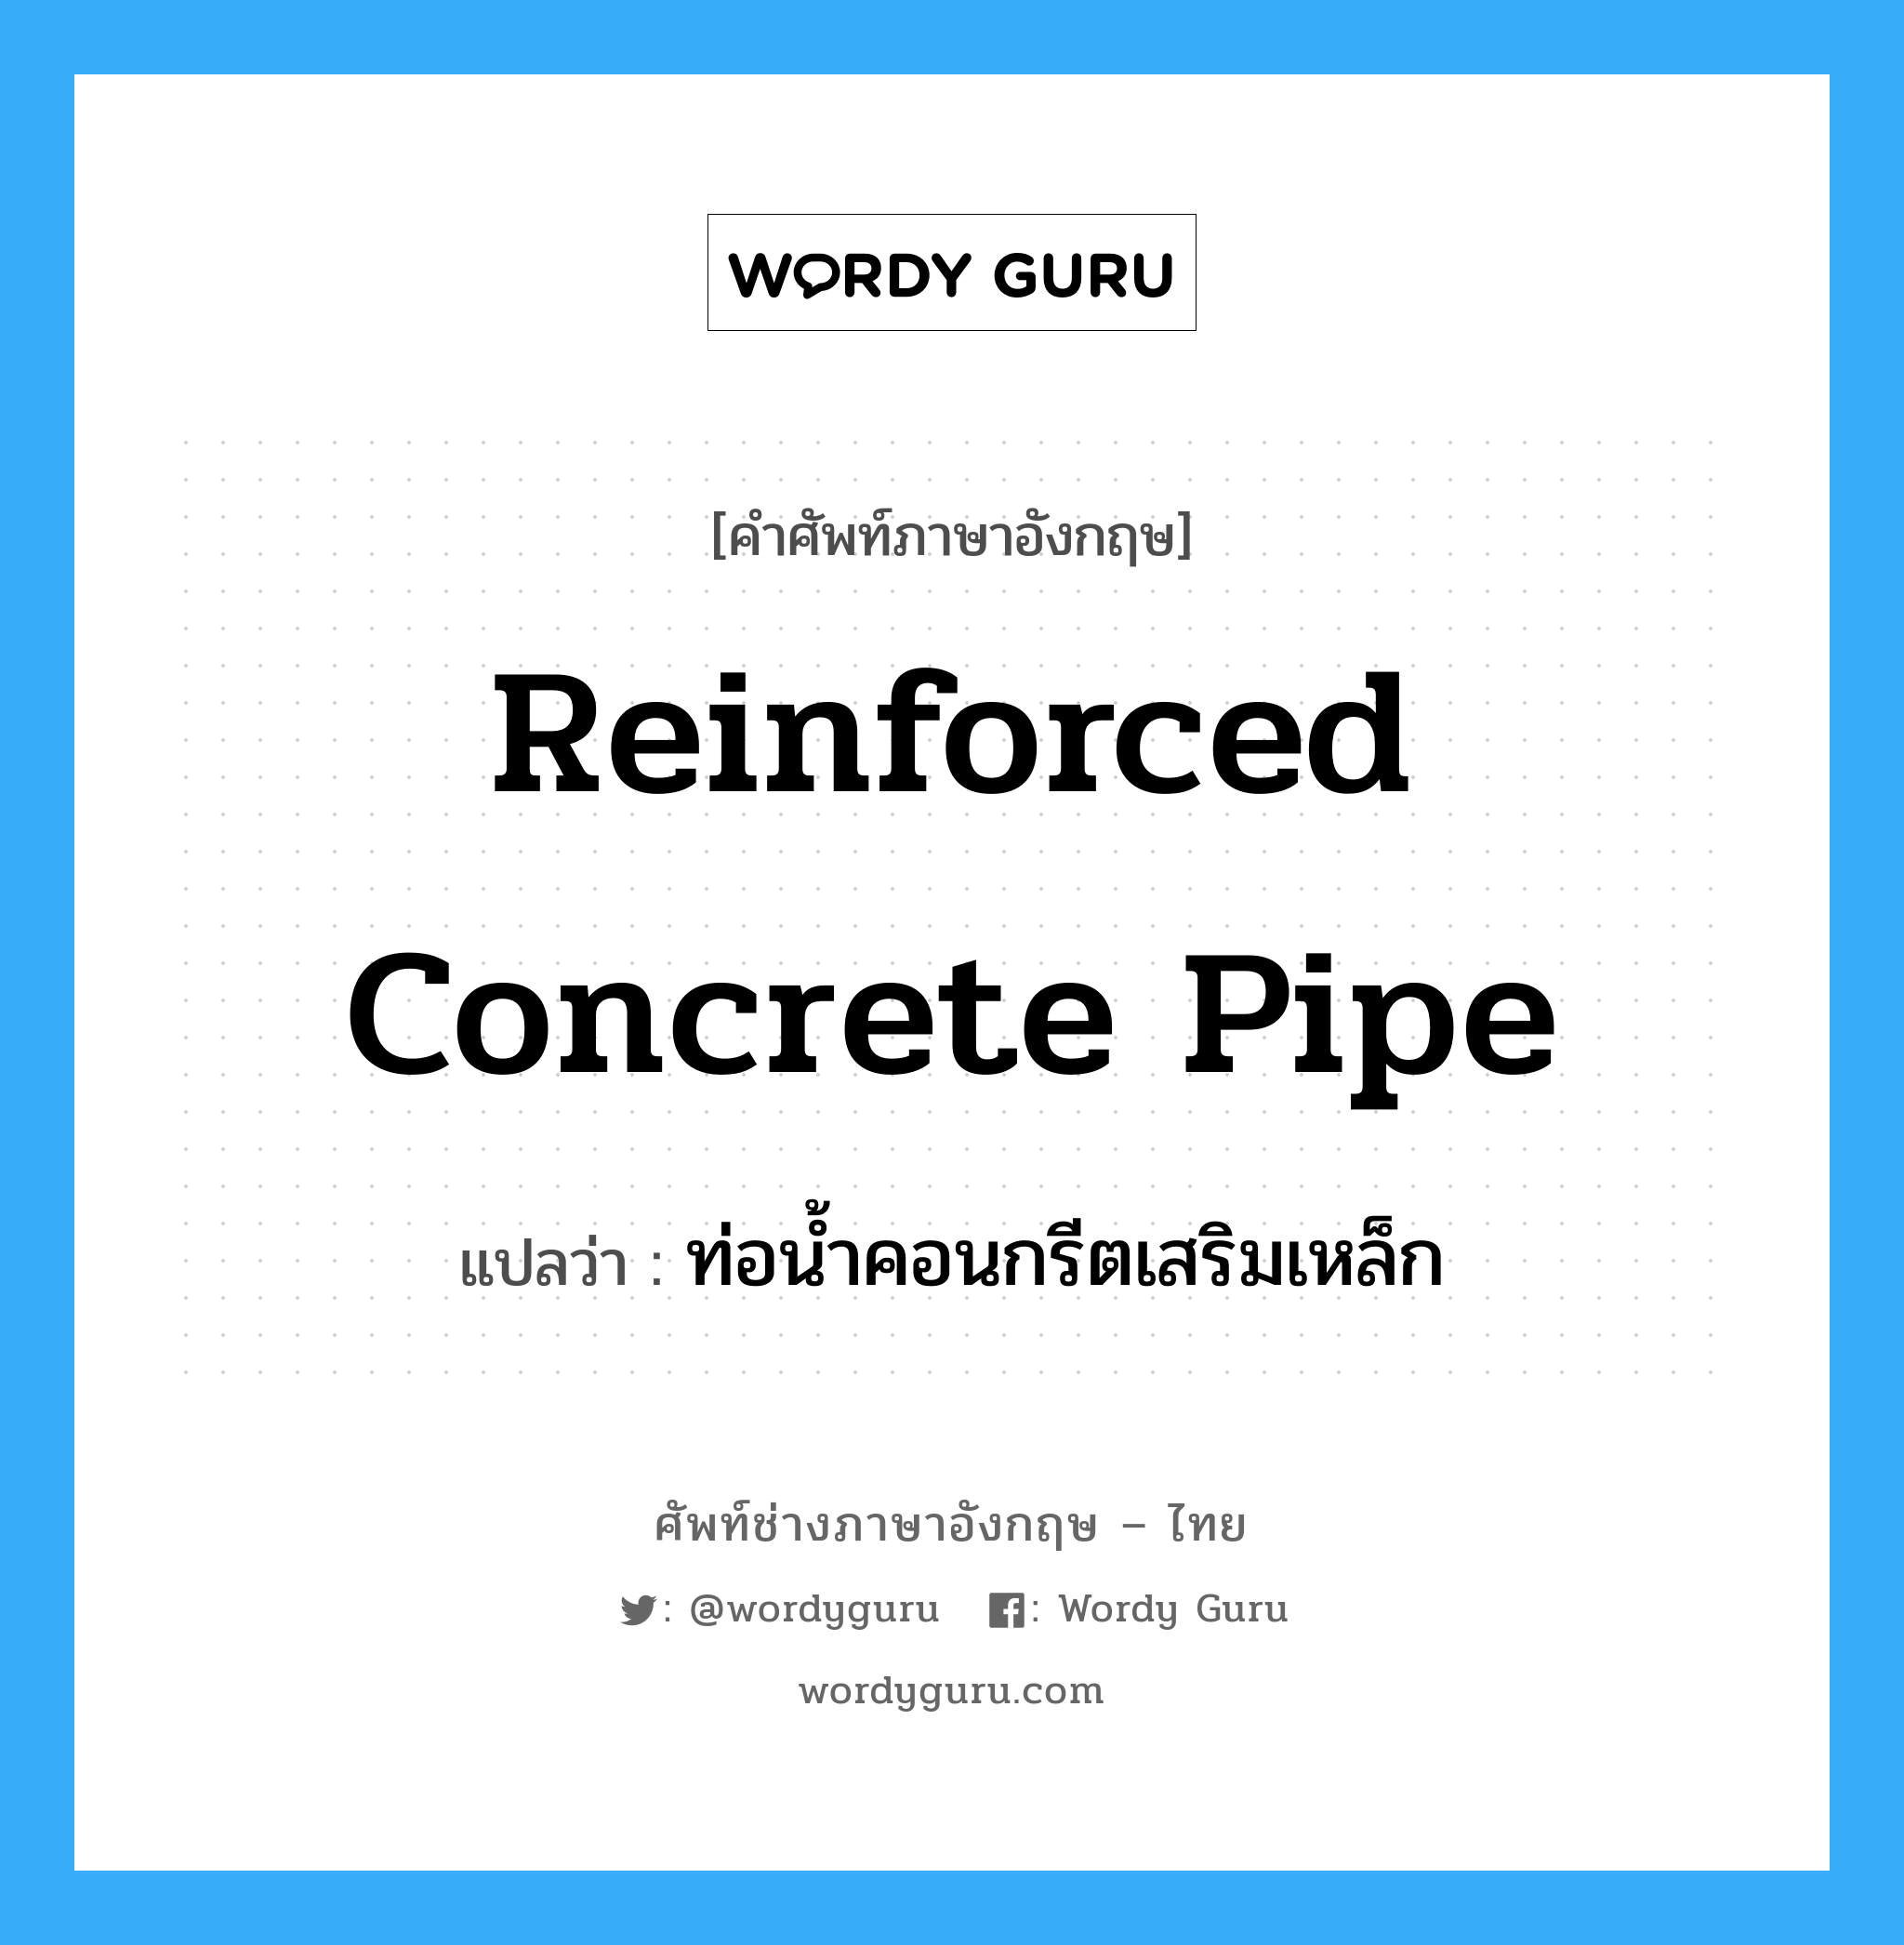 ท่อน้ำคอนกรีตเสริมเหล็ก ภาษาอังกฤษ?, คำศัพท์ช่างภาษาอังกฤษ - ไทย ท่อน้ำคอนกรีตเสริมเหล็ก คำศัพท์ภาษาอังกฤษ ท่อน้ำคอนกรีตเสริมเหล็ก แปลว่า reinforced concrete pipe